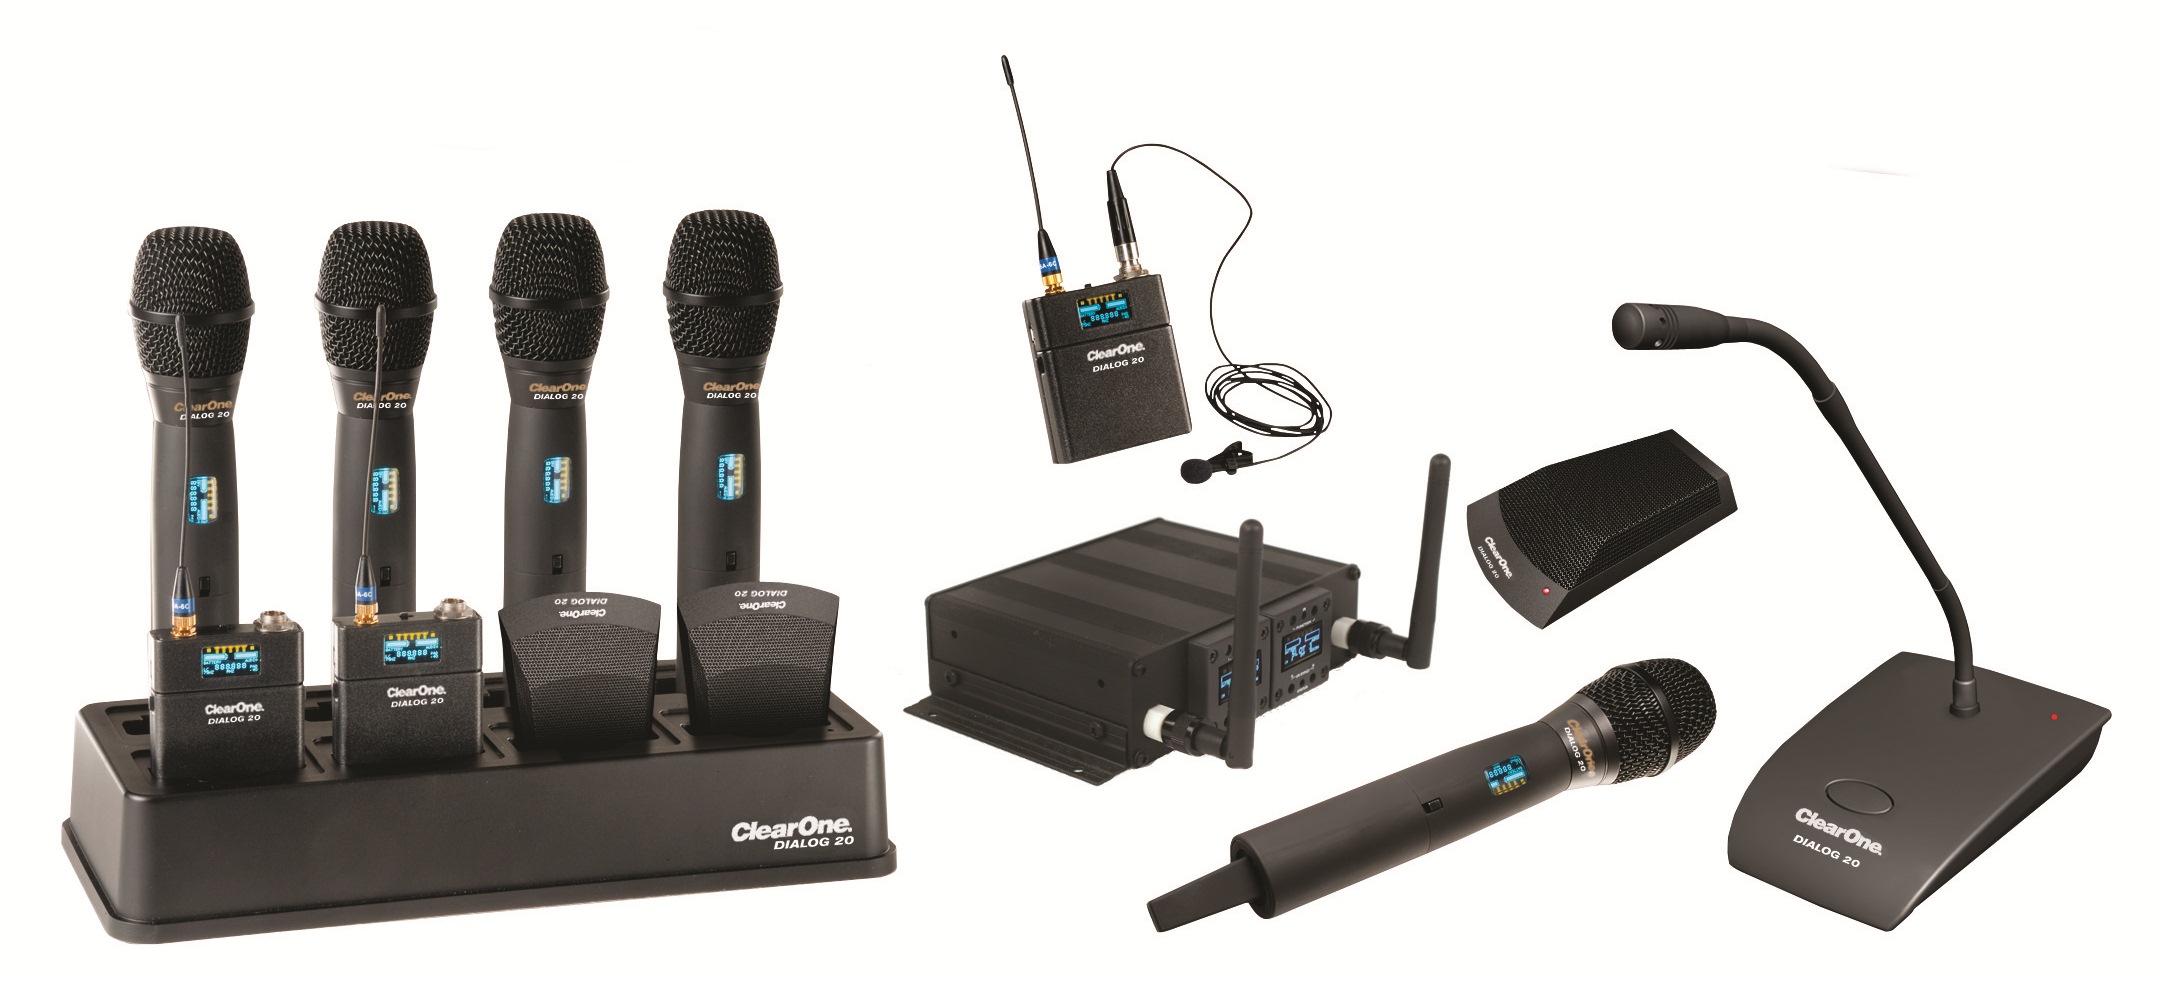 ClearOne представила беспроводную микрофонную систему DIALOG 20, поддерживающую интеграцию с микшерами CONVERGE Pro 2 